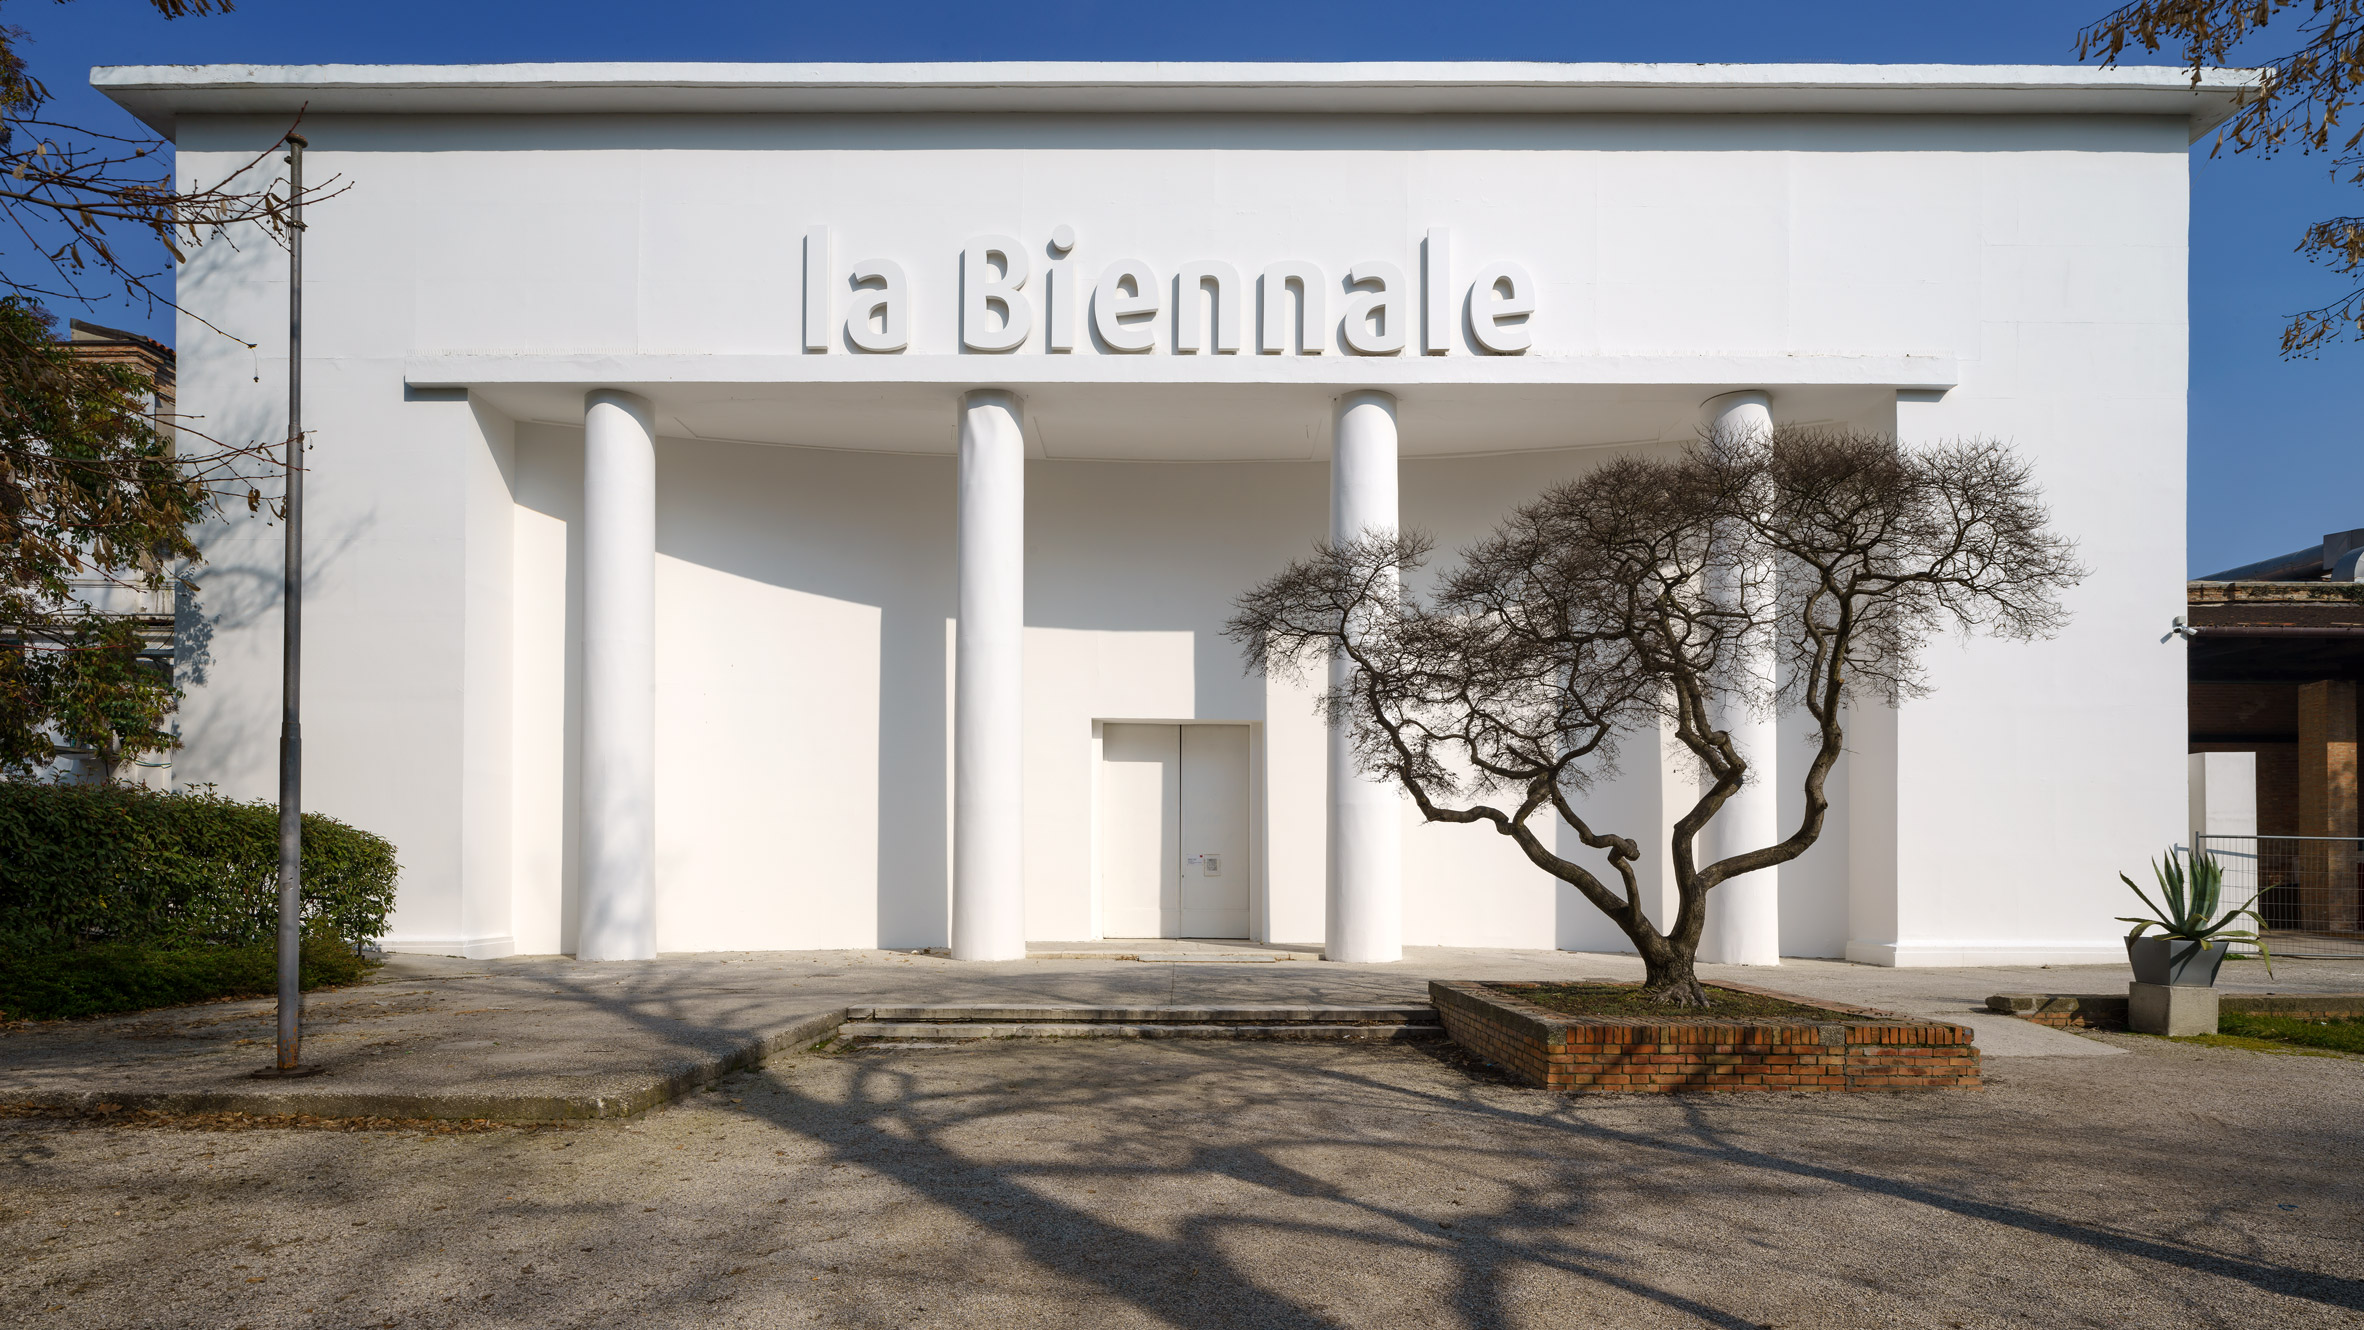 The Venice Biennale Giardini